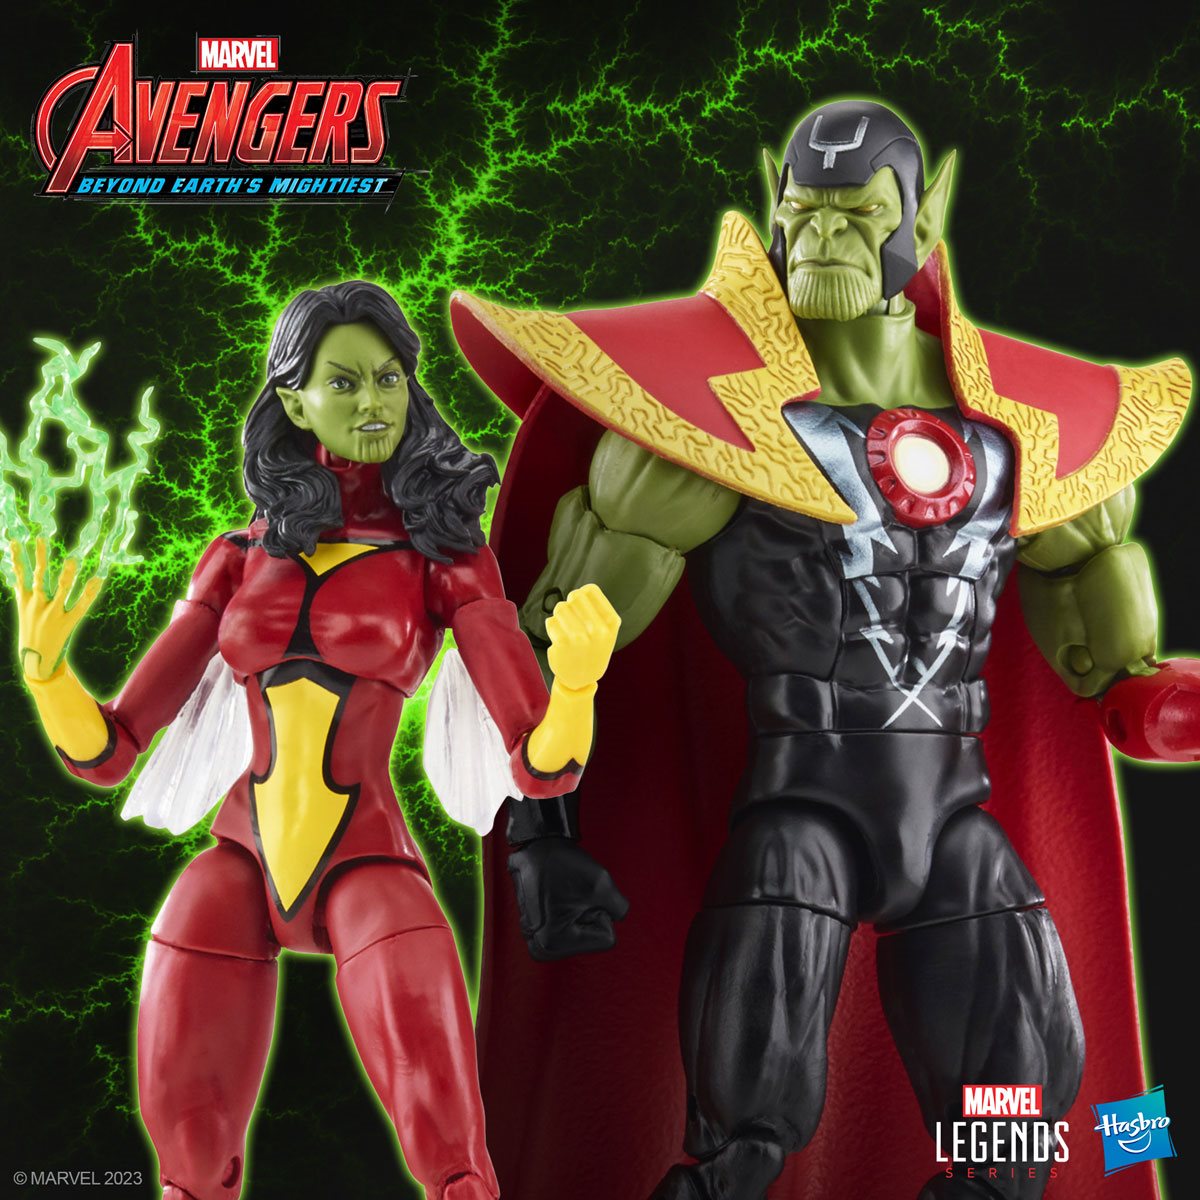 Avengers 60th Anniversary Marvel Legends Skrull Queen and Super-Skrull Hasbro